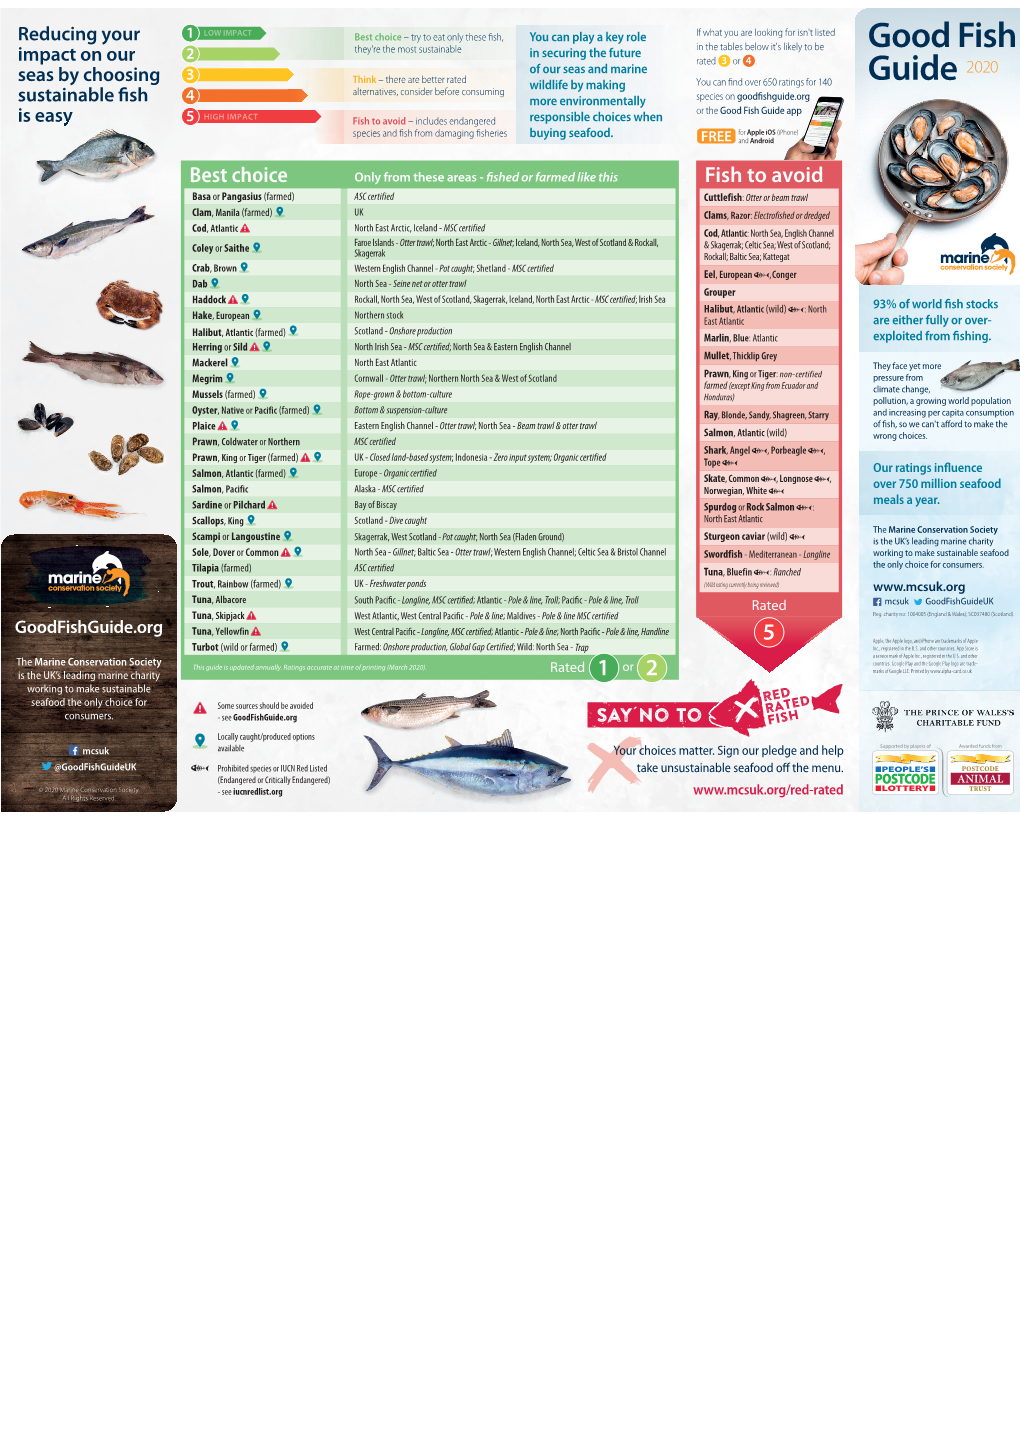 Good Fish Guide 2020